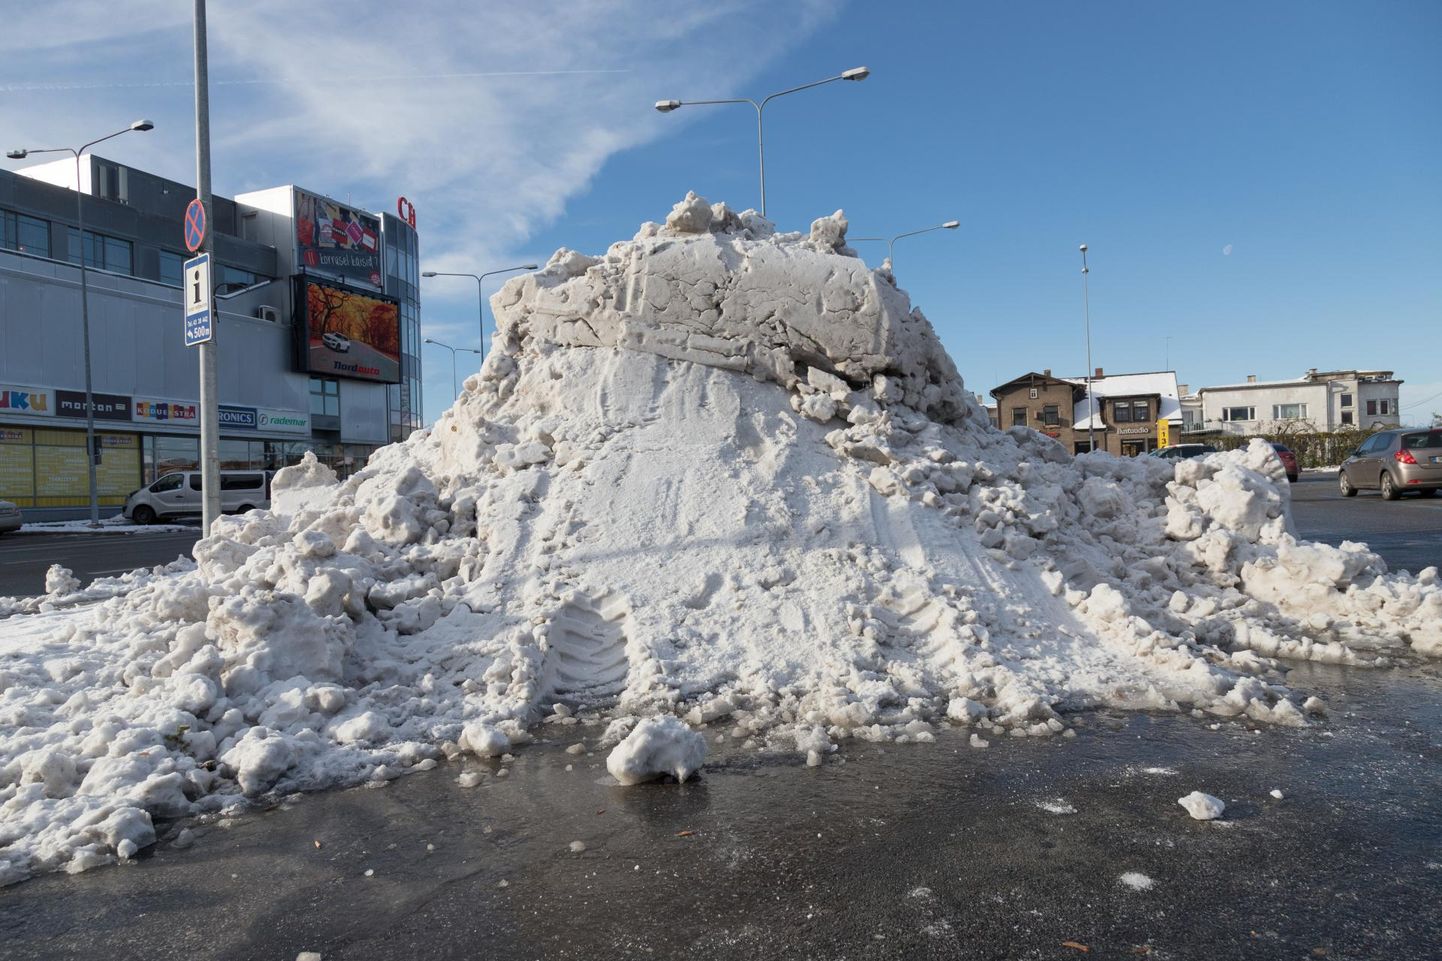 Oktoobri viimasel nädalavahetusel sadas Viljandis maha lumi ning tänavakoristajad lükkasid kokku lausa mitme meetri kõrgused lumehunnikud. Pilt on tehtud paar päeva pärast suurt sadu, 29. oktoobril bussijaamaesisel platsil.